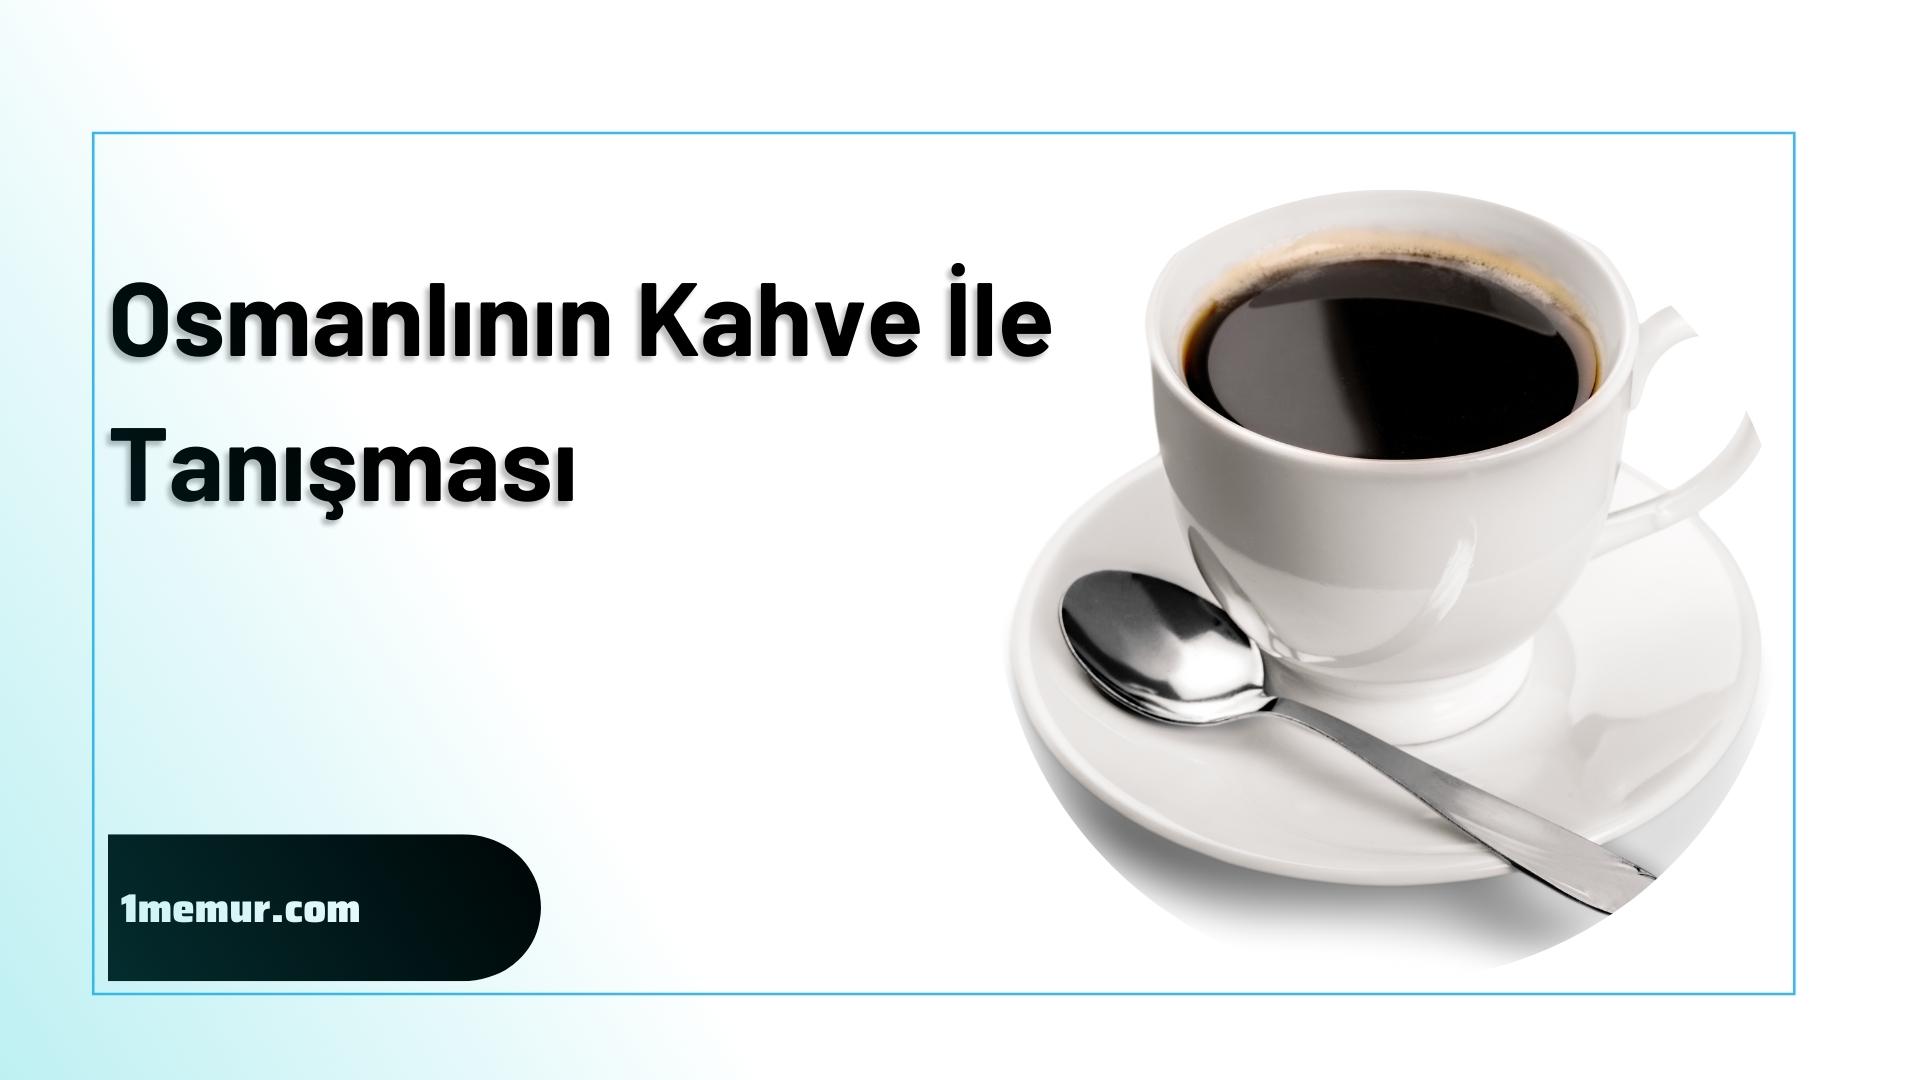 Osmanli kahve